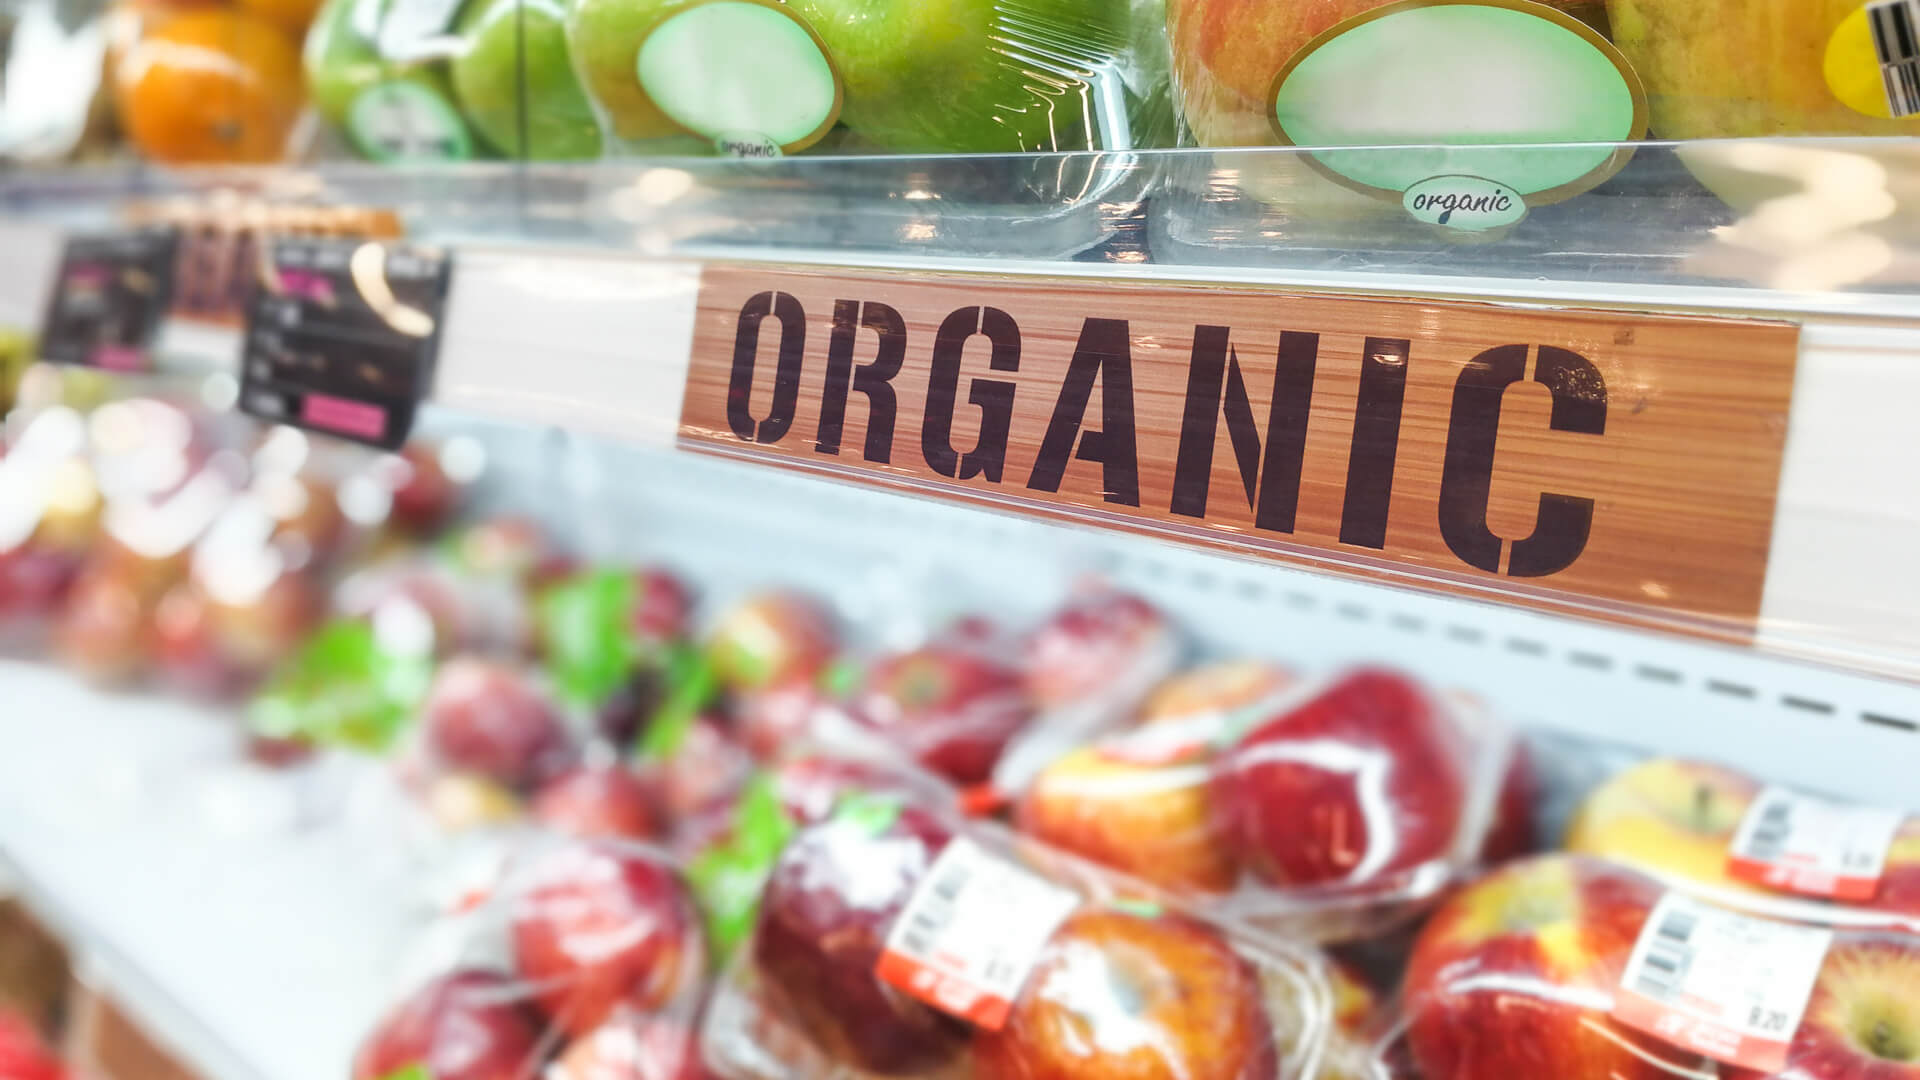 Organic Shop UAE - Posts - Facebook